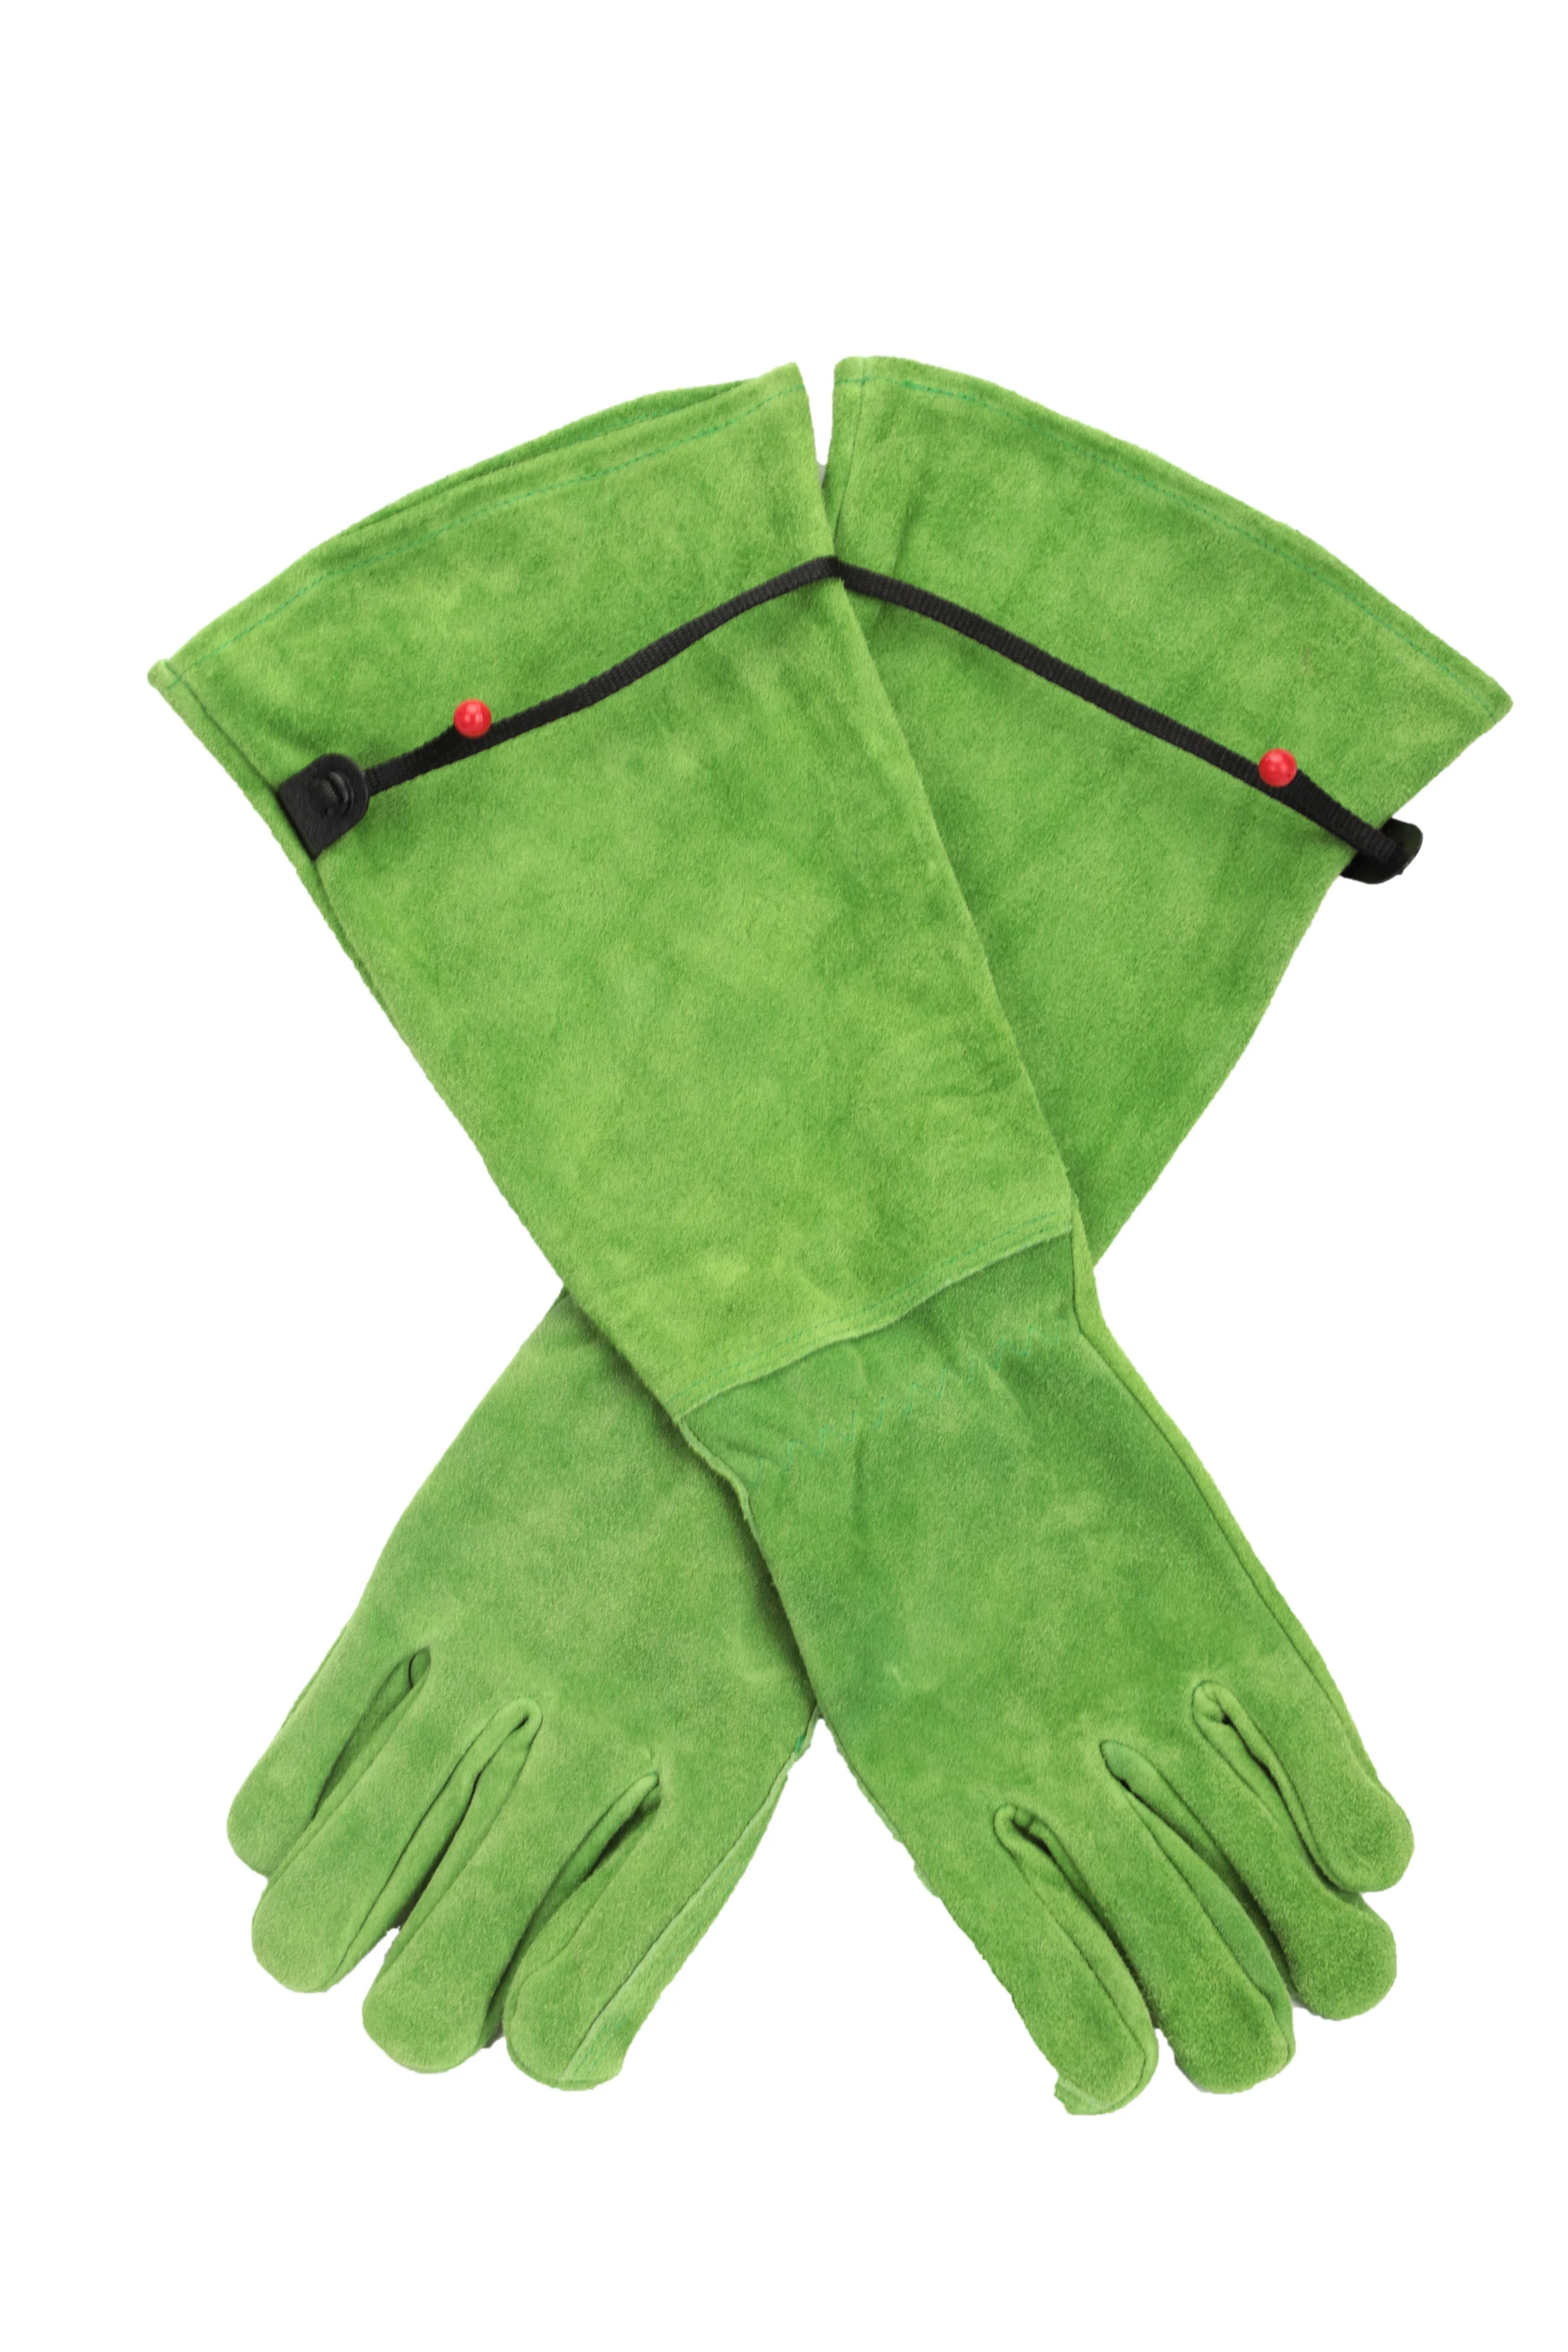 Кожаные сварочные перчатки KIM YUAN 50 пар-термостойкие идеально подходят для